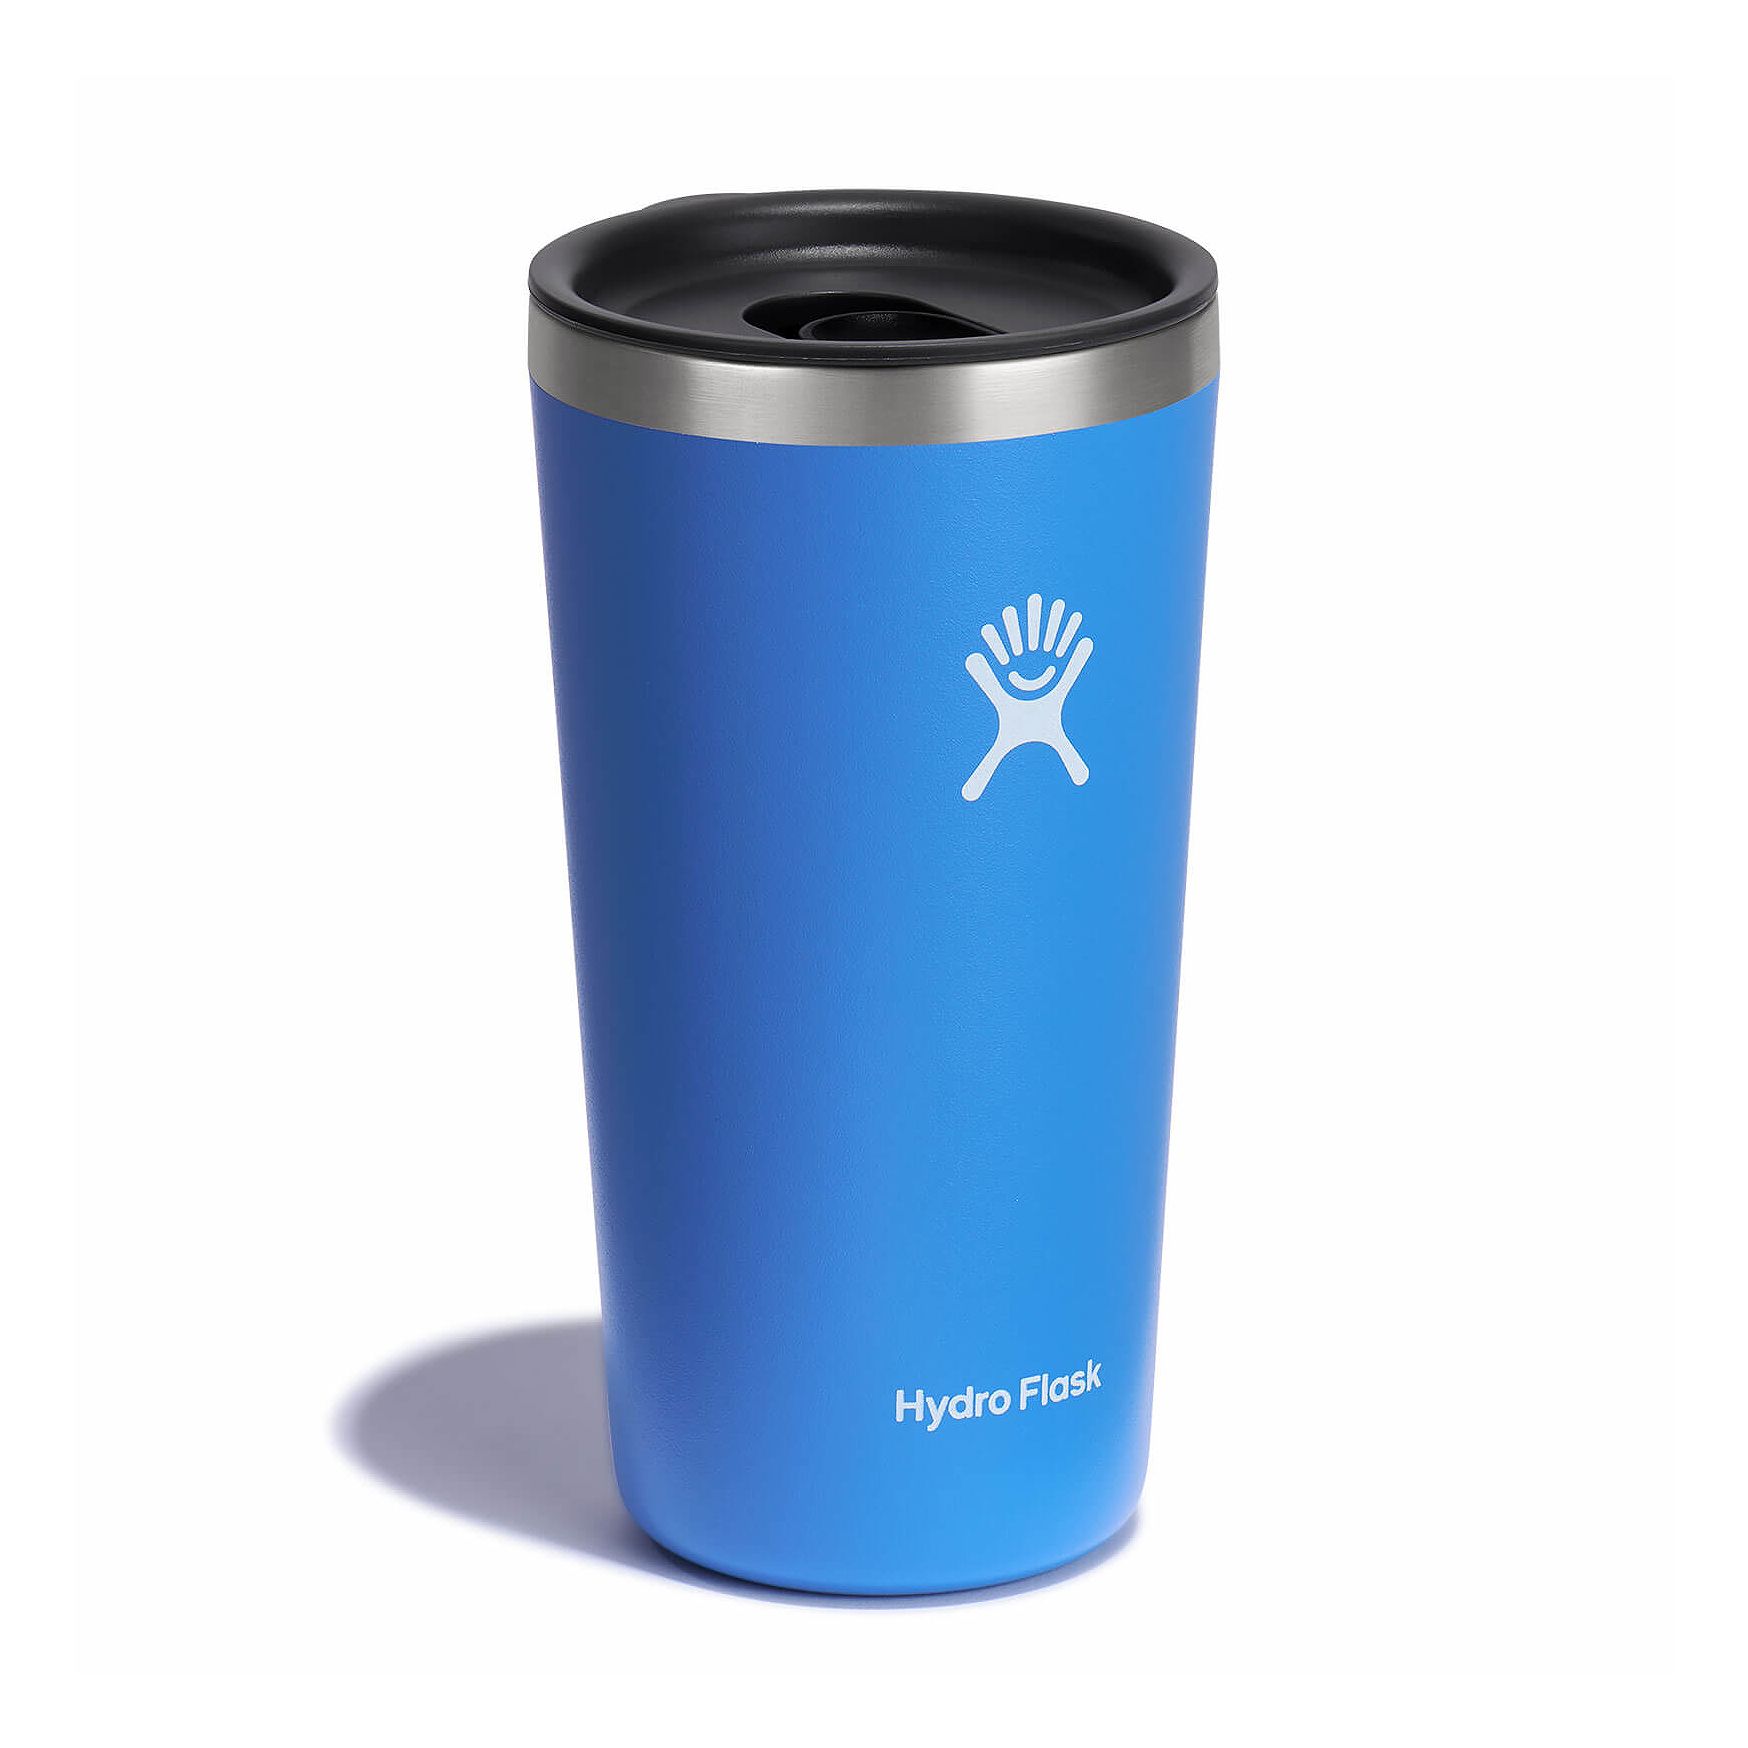 【【蘋果戶外】】Hydro Flask【隨行杯 / 591ml】20oz 保溫隨行杯 (青鳥藍) 附蓋 滑蓋咖啡杯 保溫杯 保冷杯 保溫瓶 TUMBLER